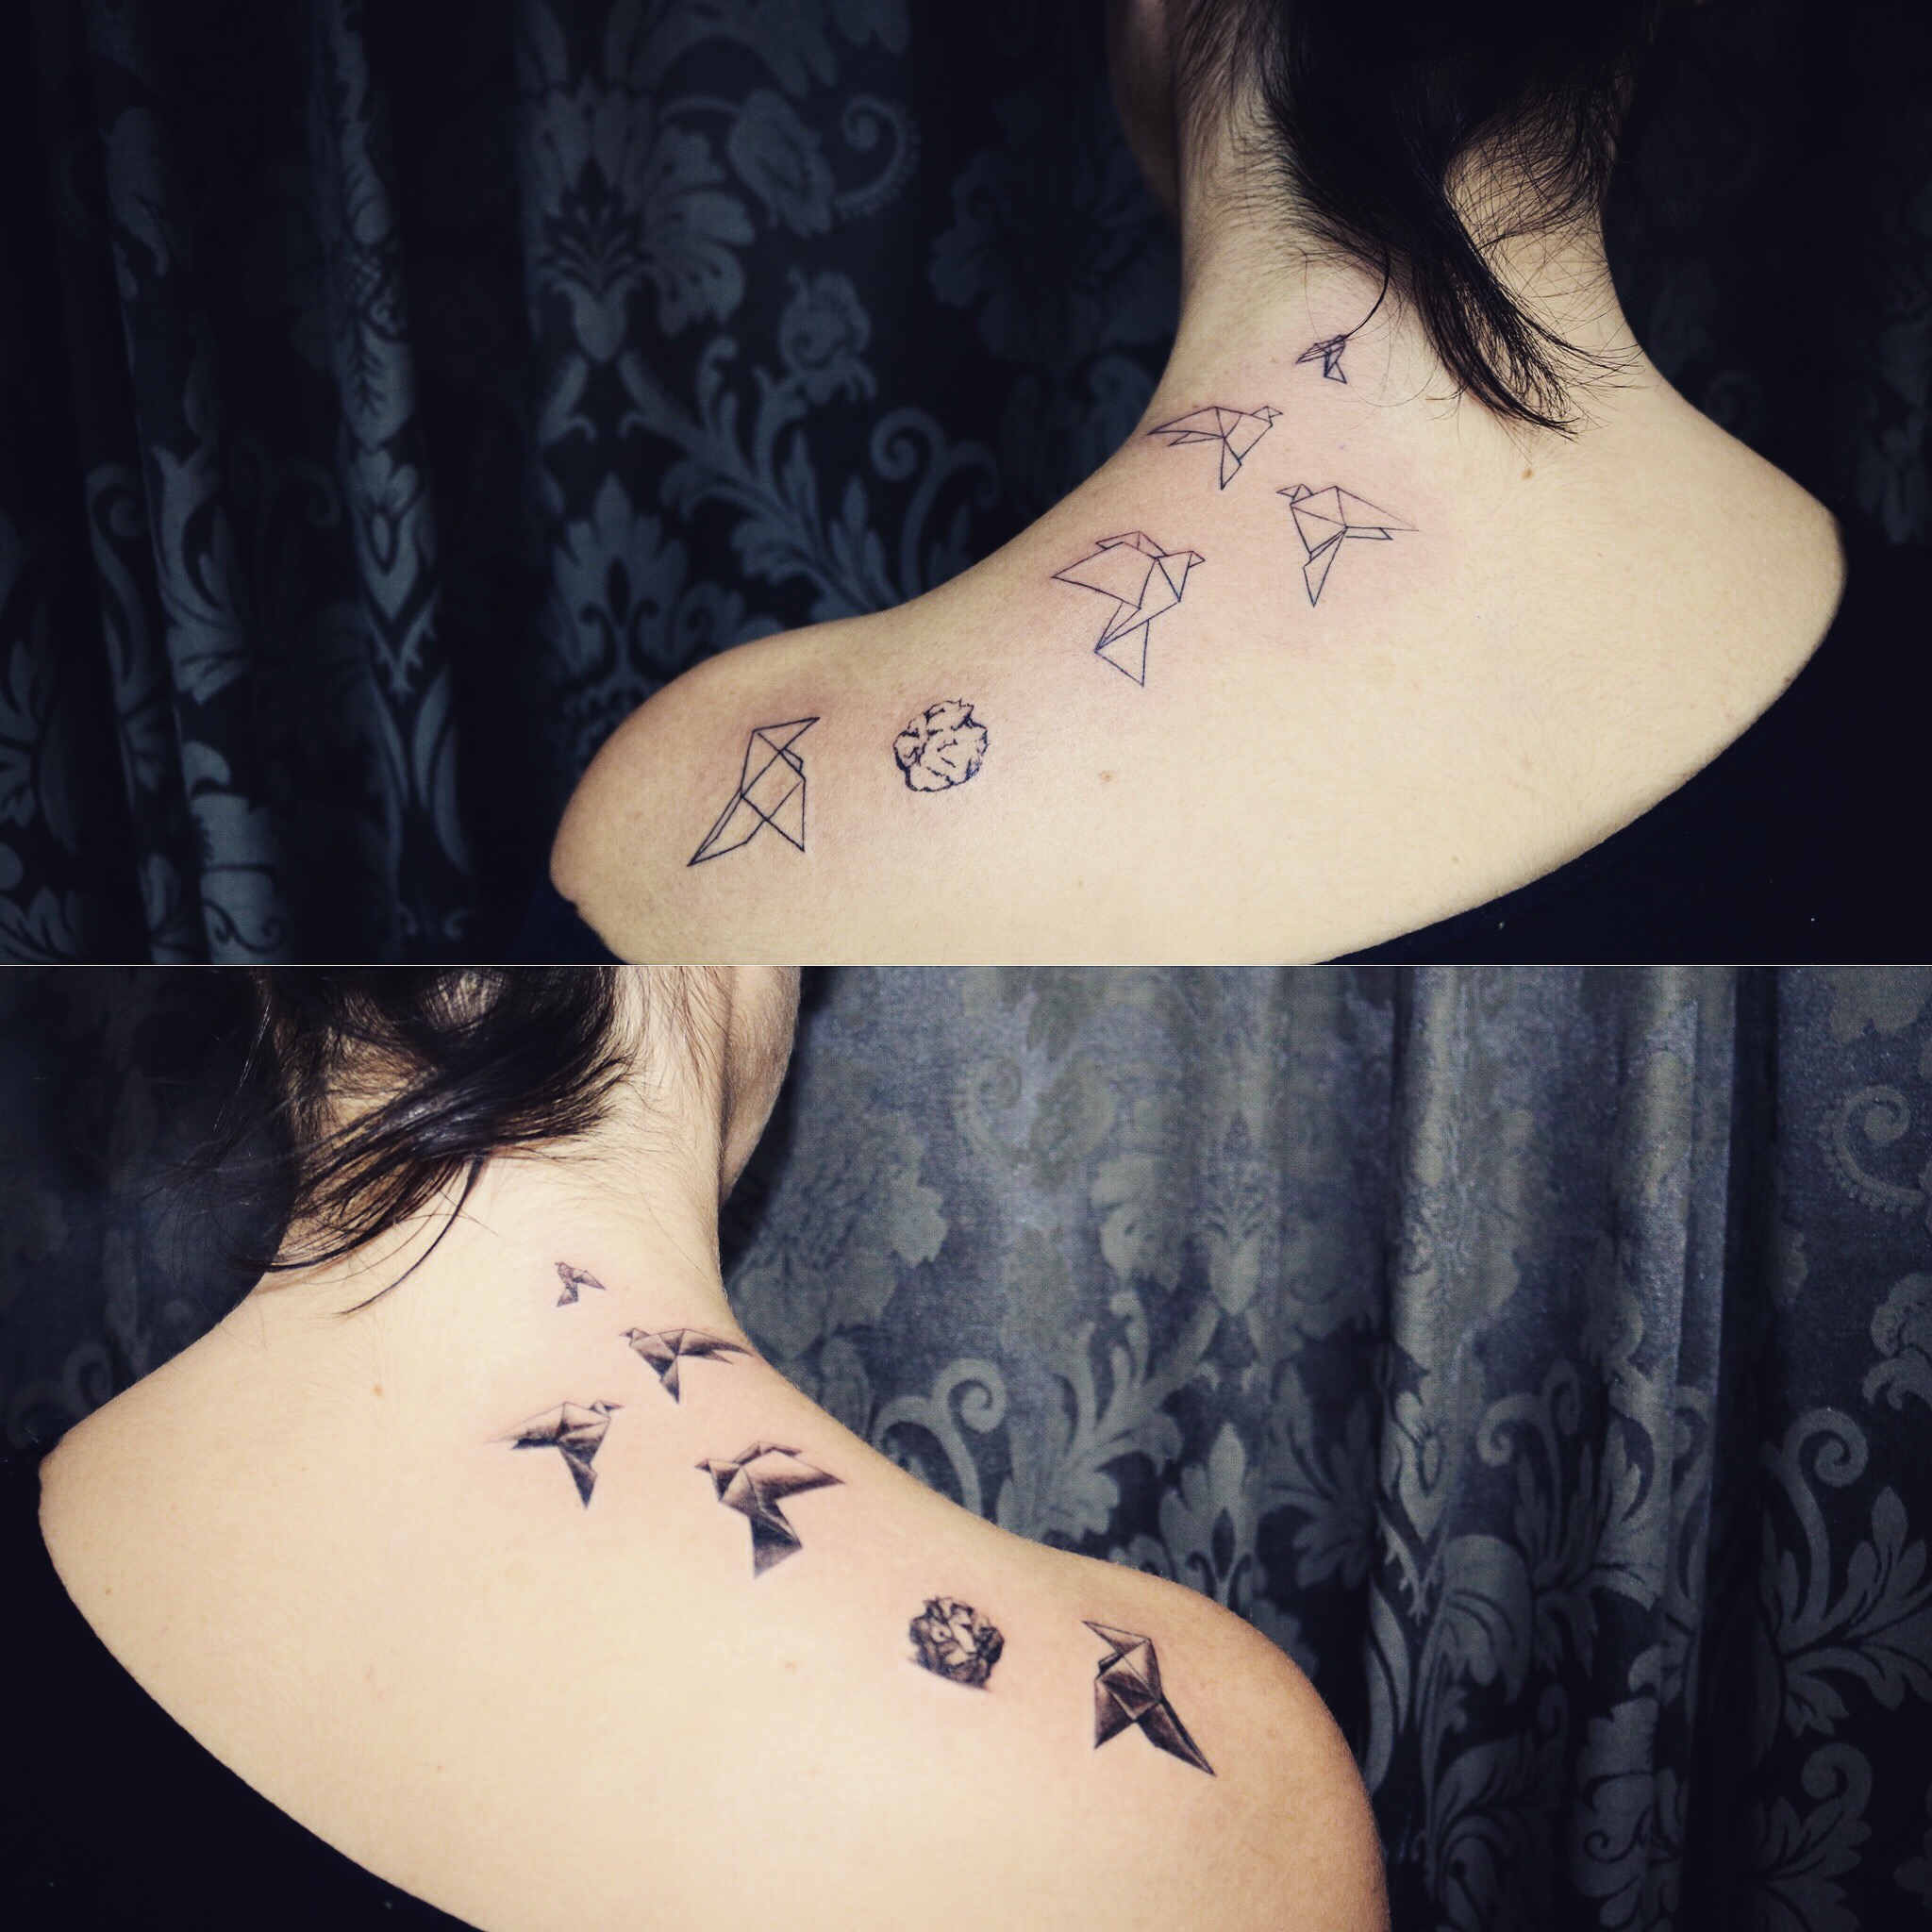 geometria, tatuajegeometrico, madridtattoo, tattooshopmadrid, geometrictattoo, lineamuyfina, tatuajelineafina, finelinetattoo, fineline, hiperfineline, minitattoos